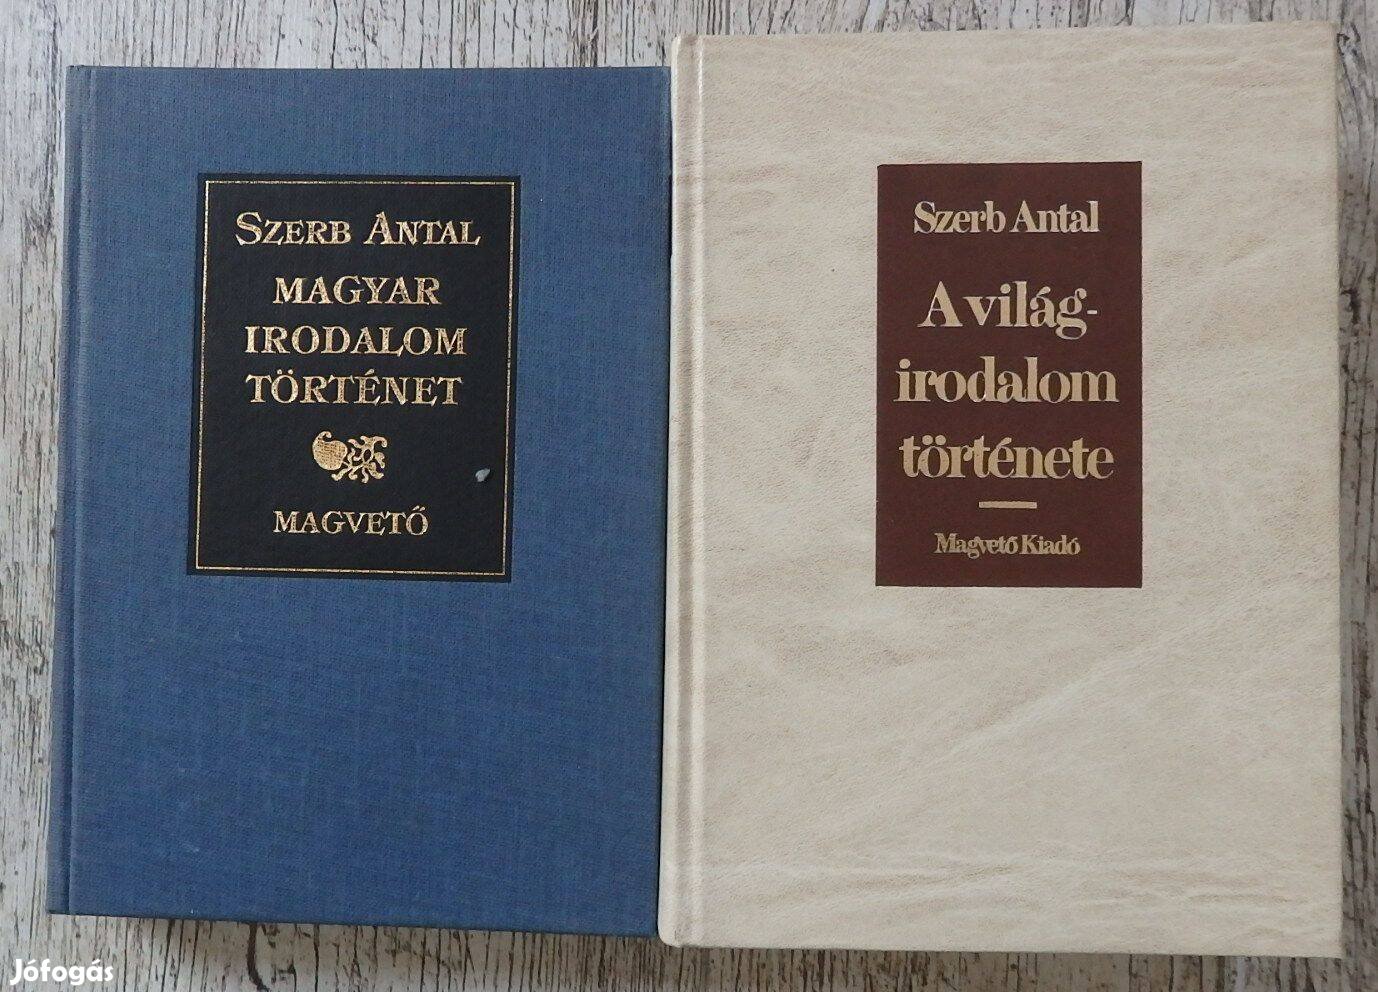 Szerb Antal: Magyar irodalom történet és A világirodalom története